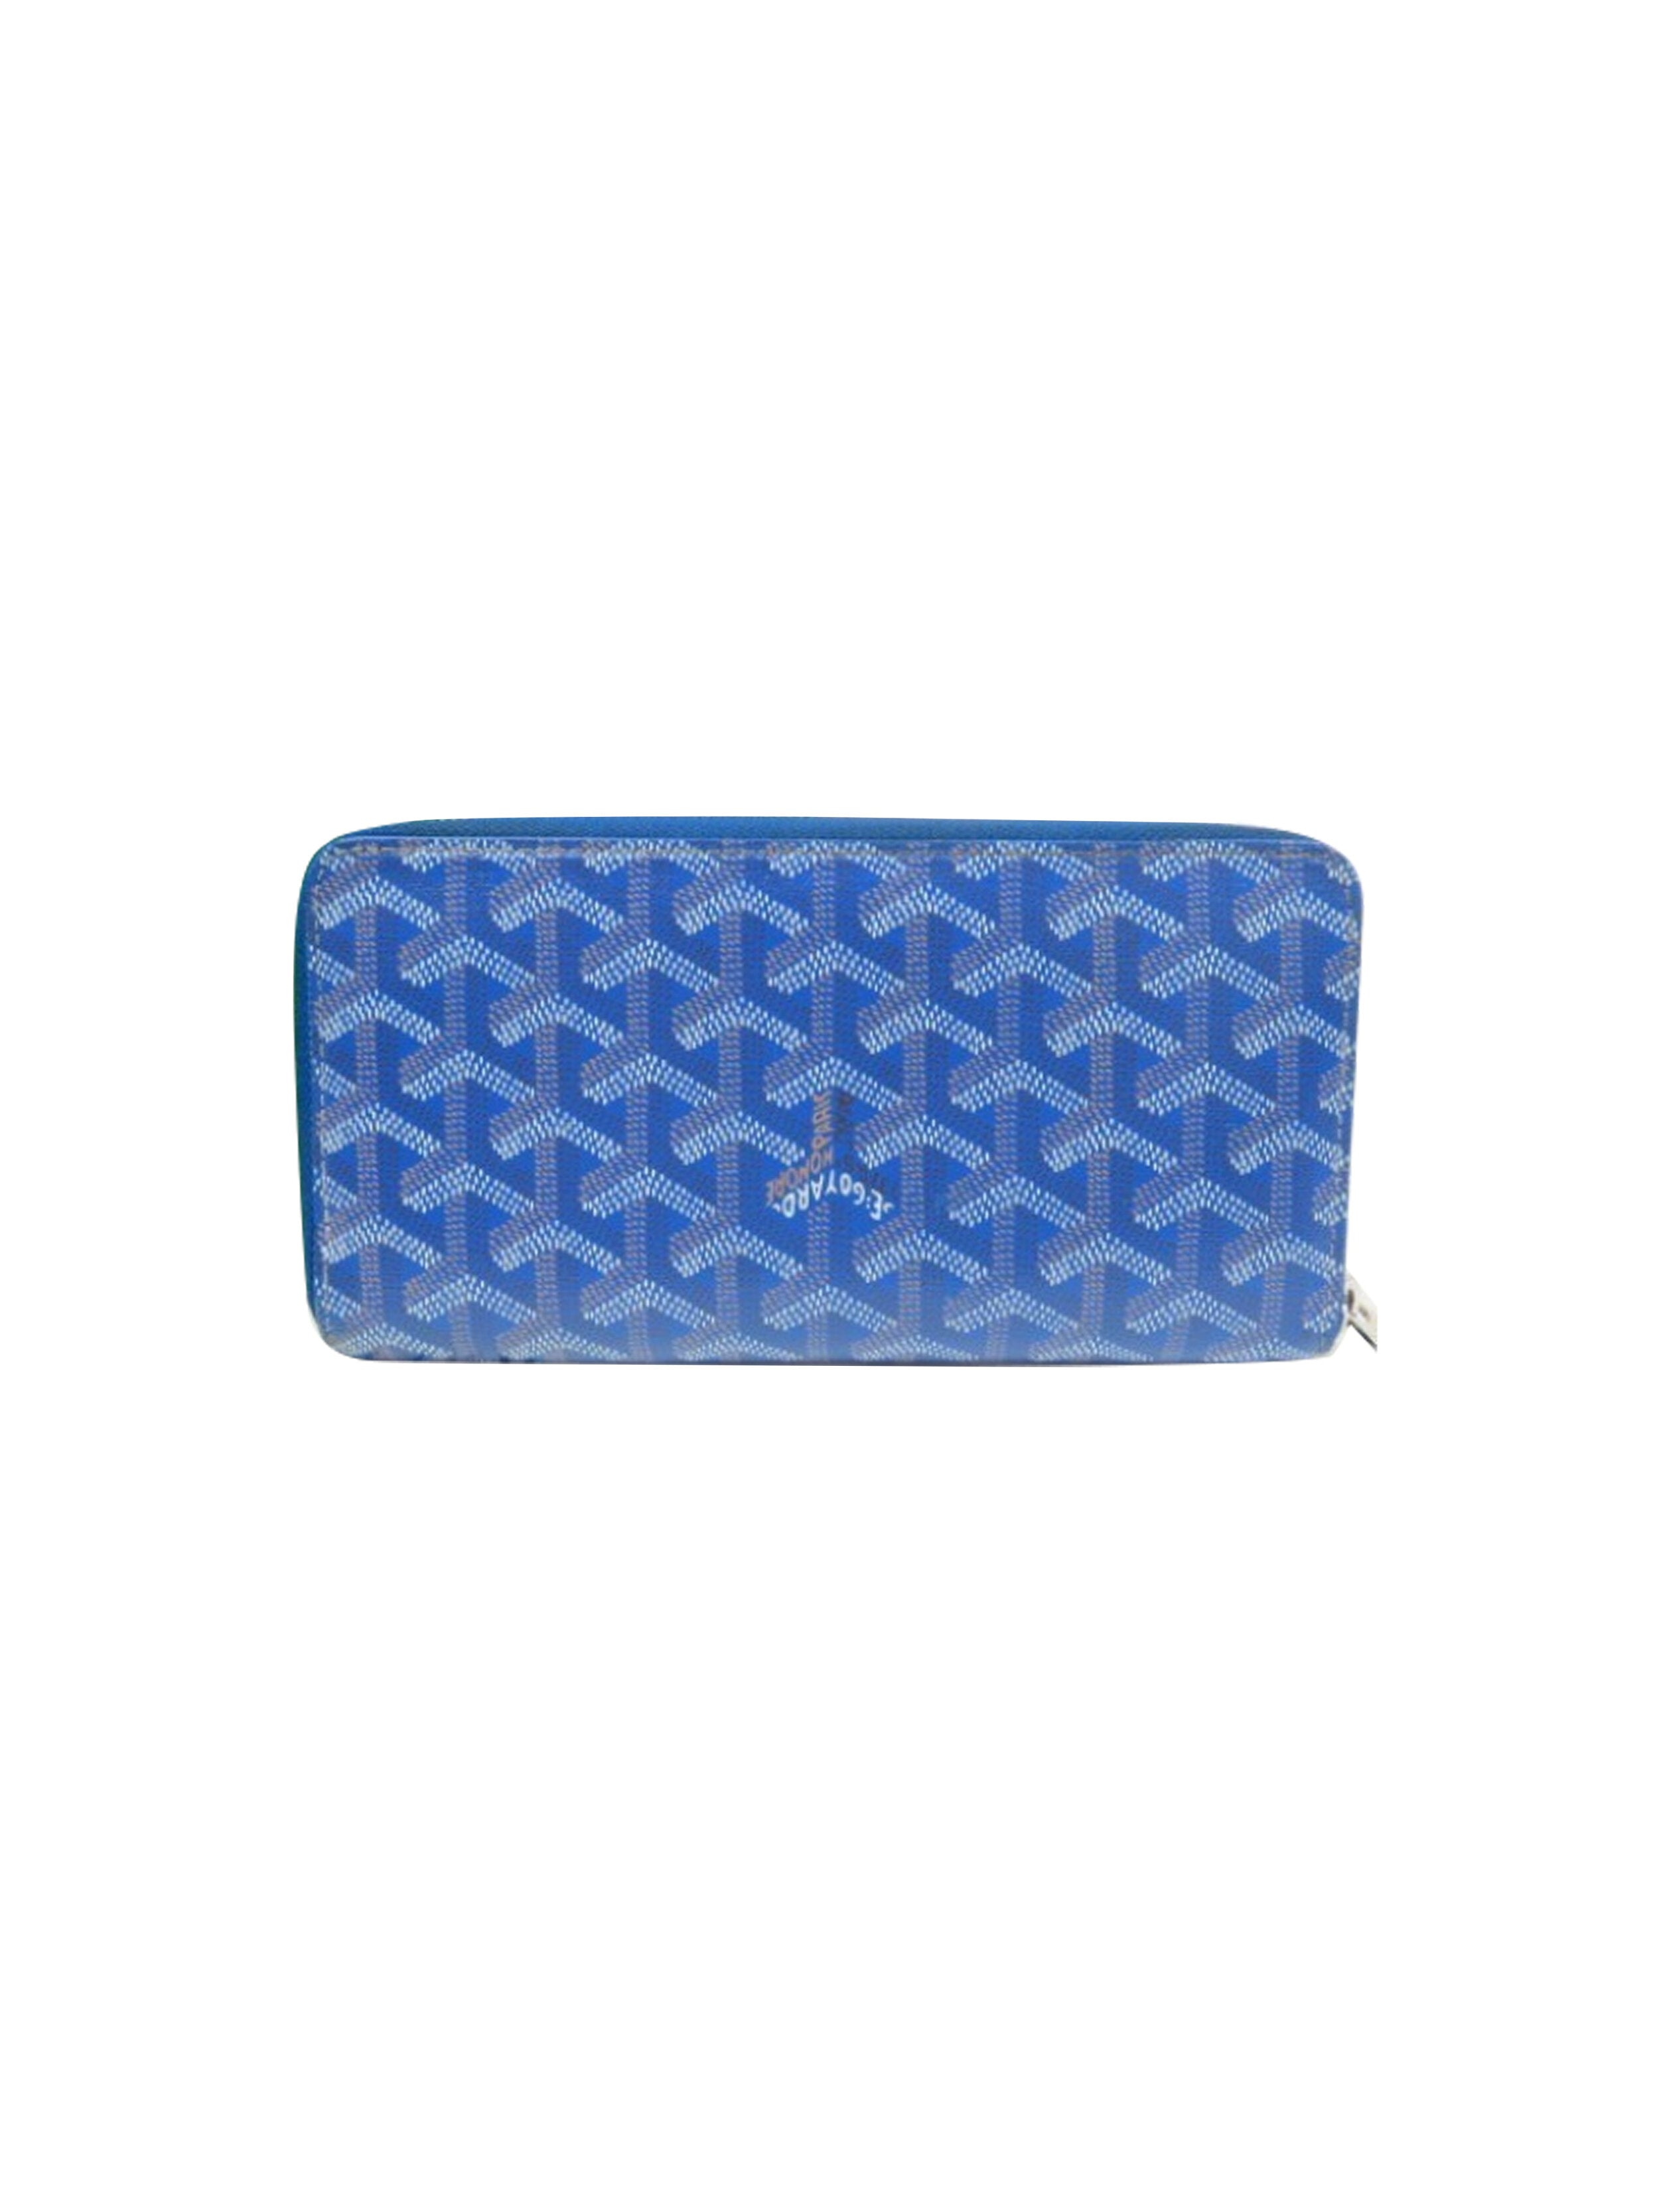 Goyard 2000s Blue Leather Wallet